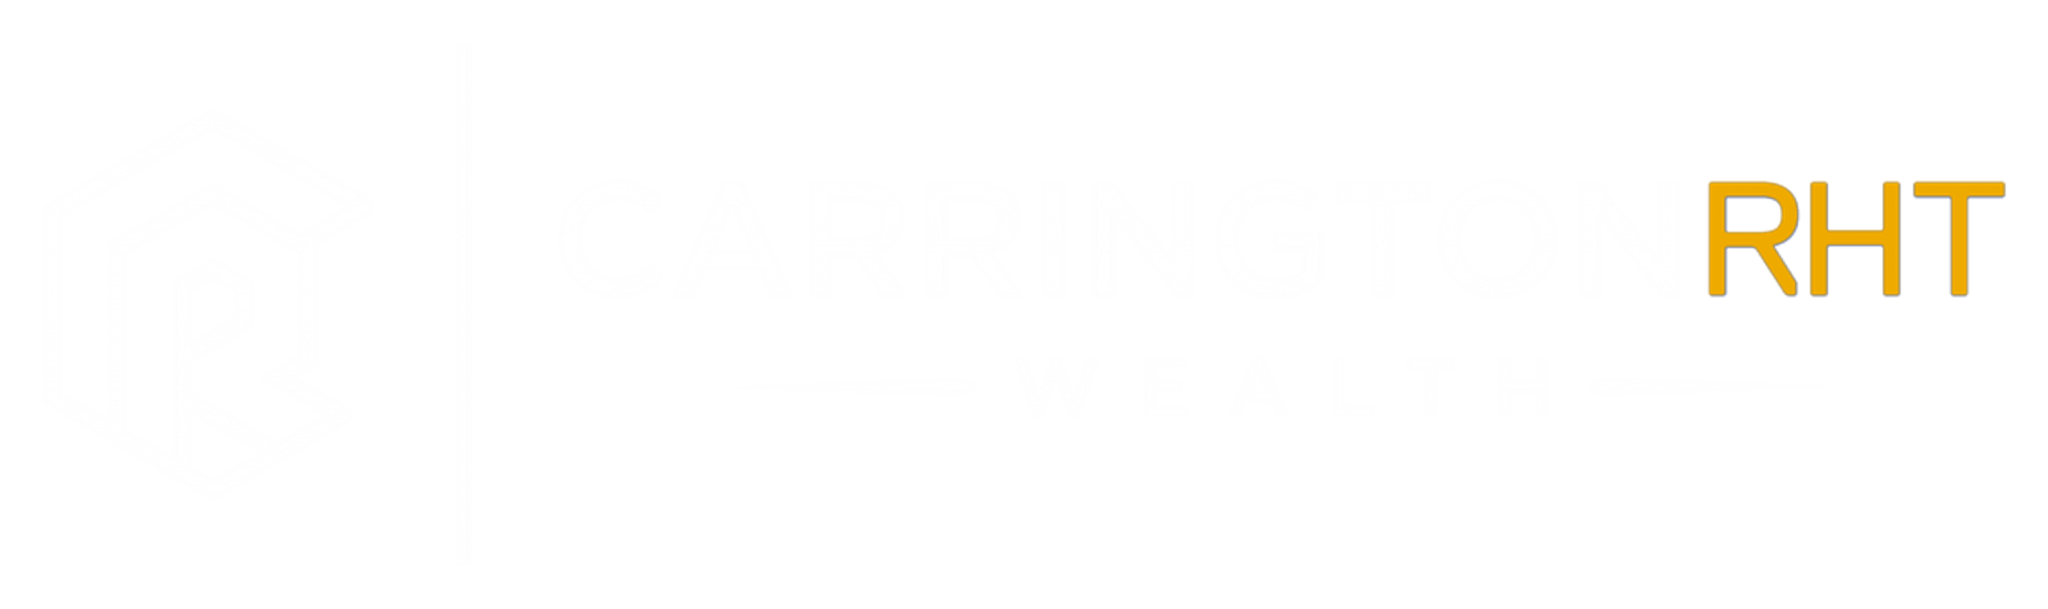 The Carrington Brand